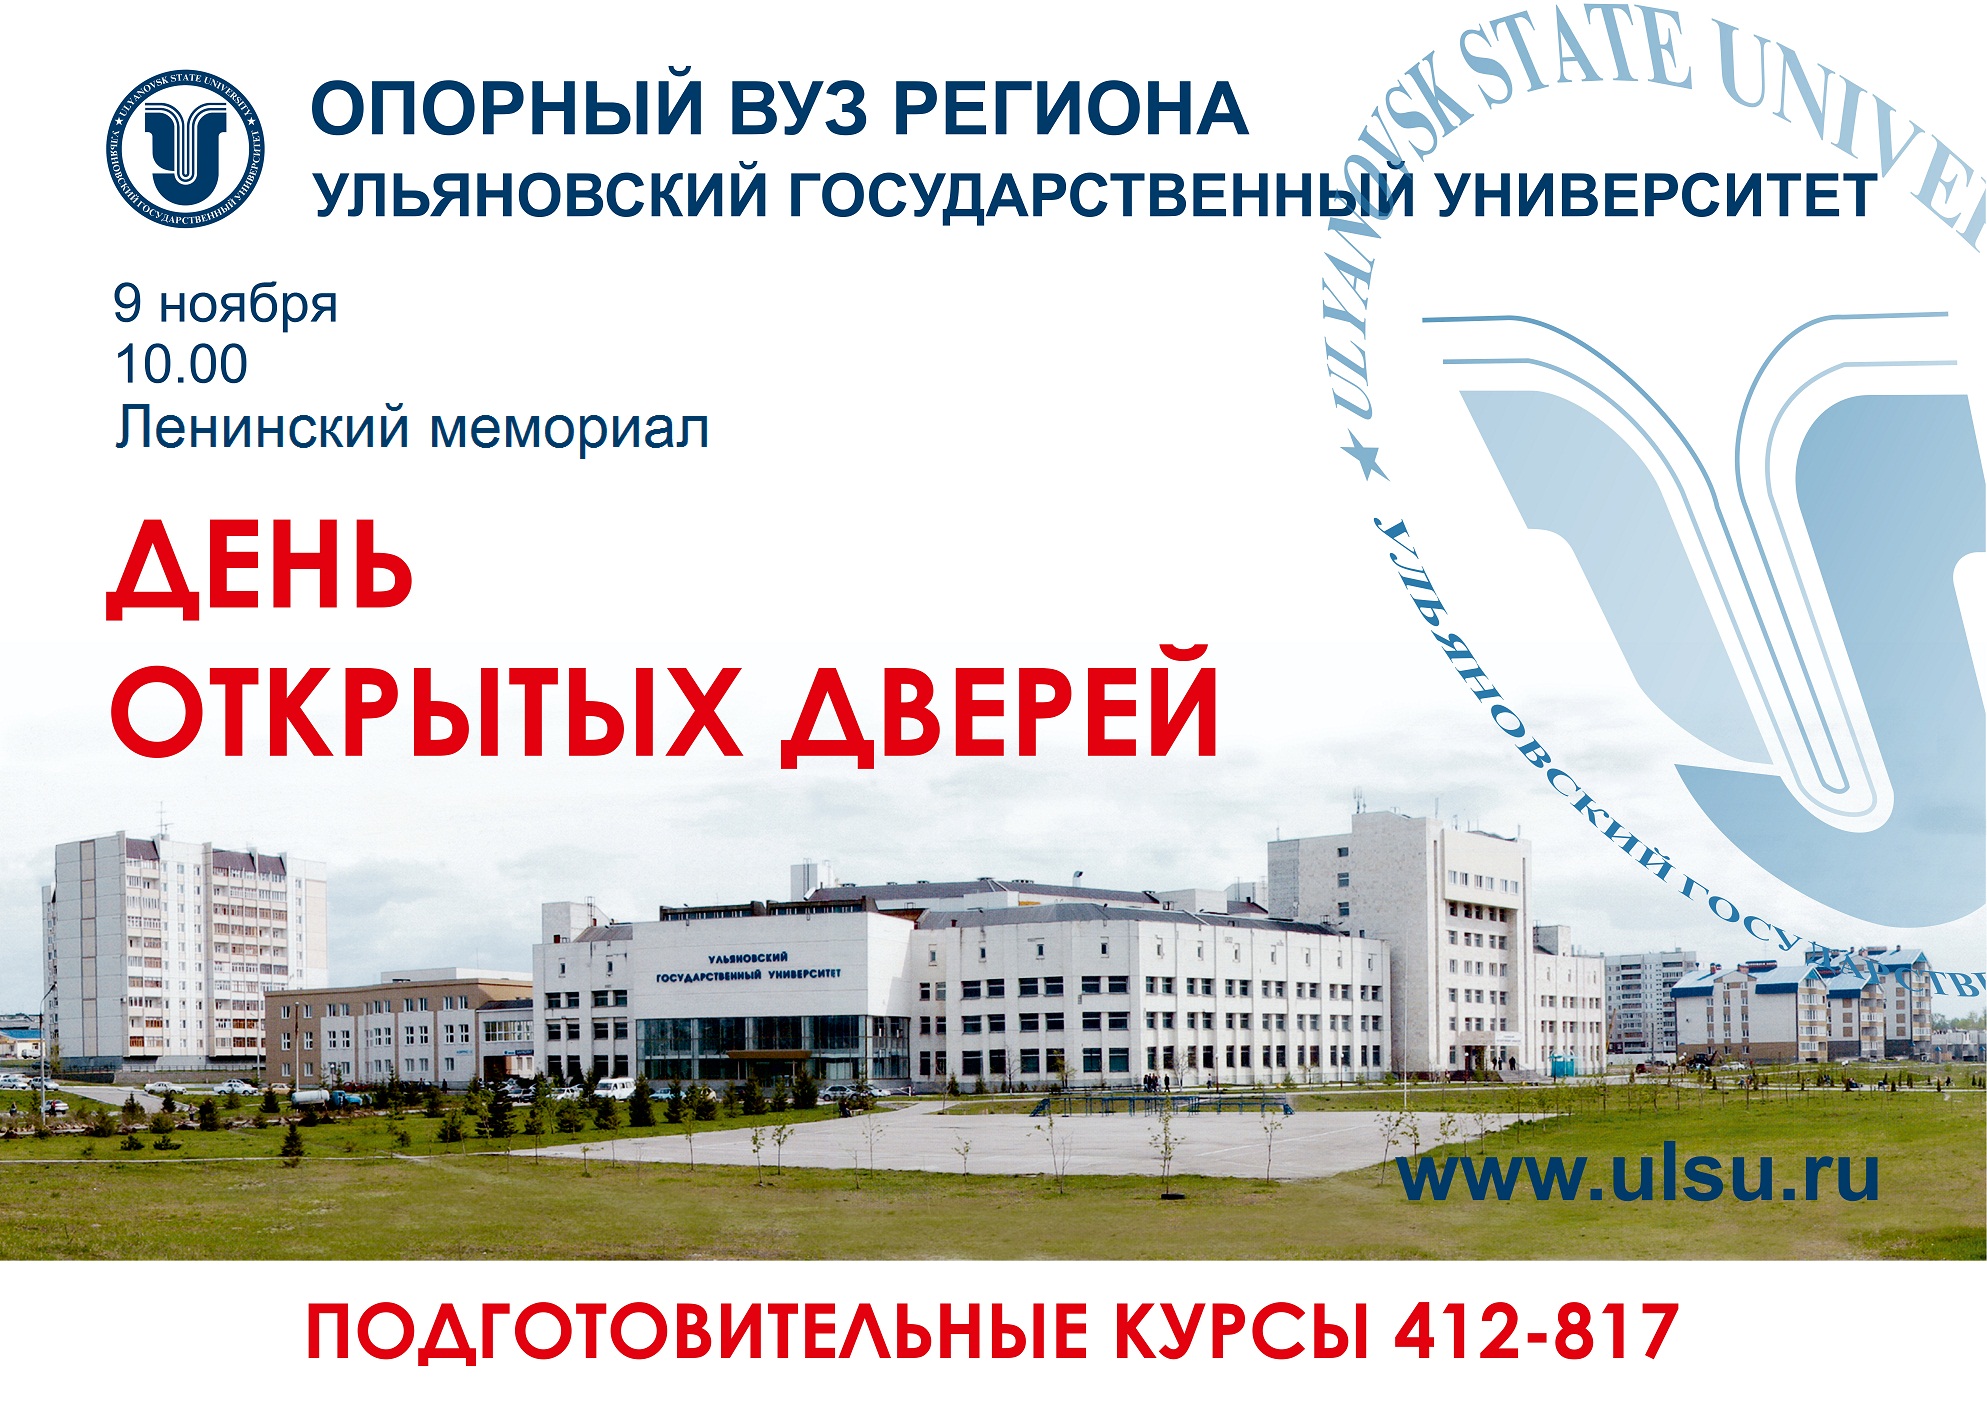 Ульяновский медицинский университет